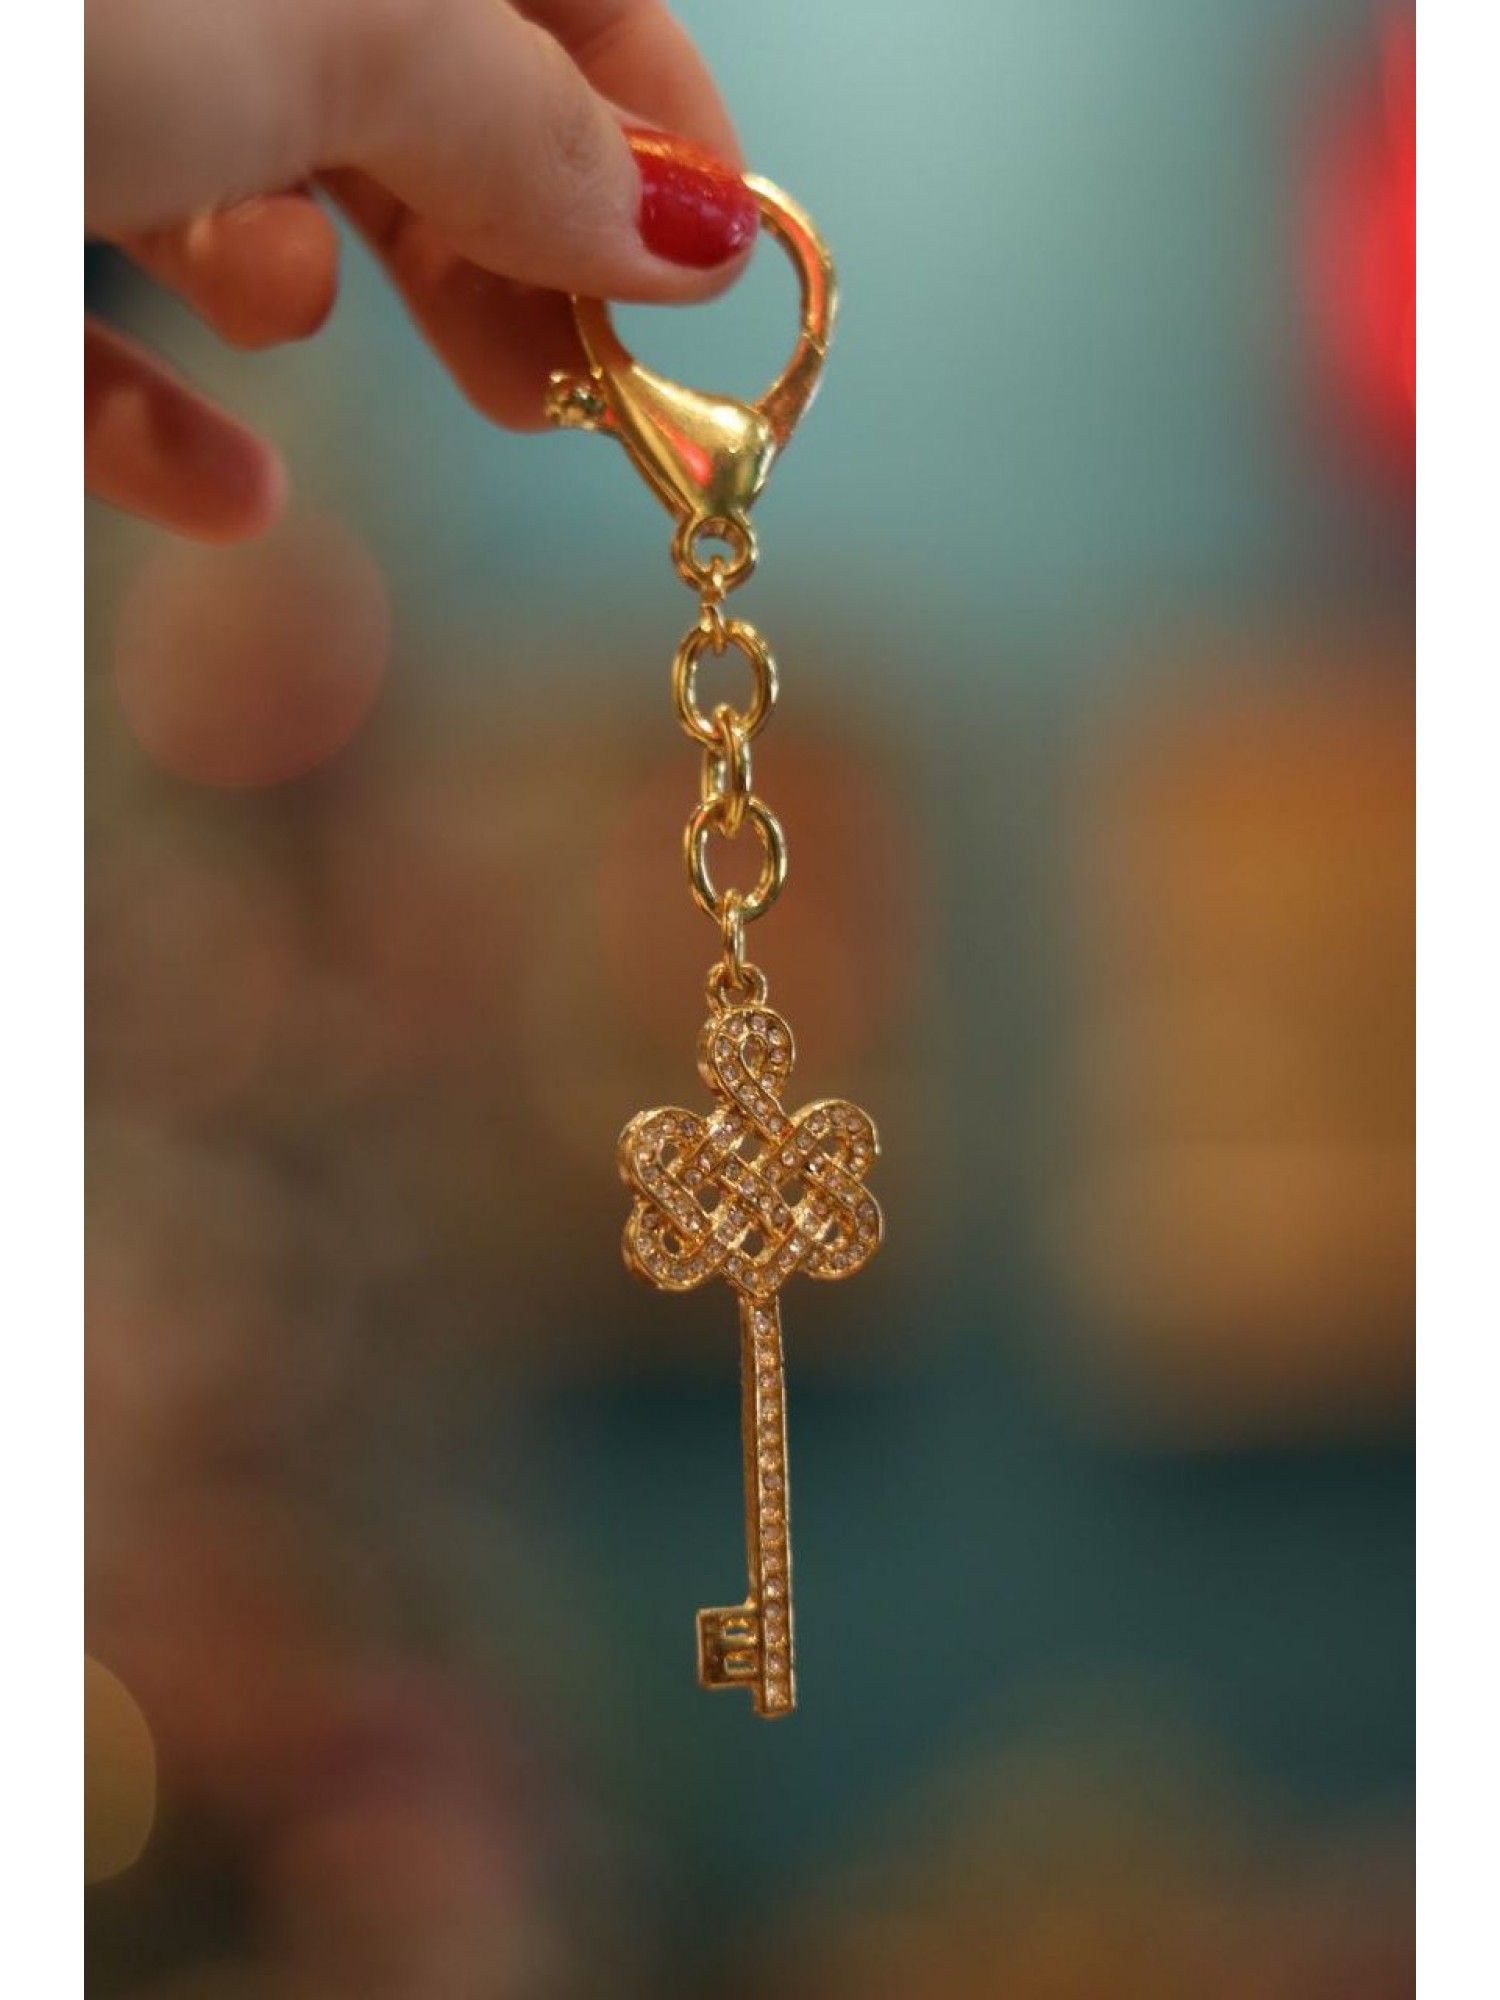 Брелок "Золотой Ключ с Мистическим Узлом" откроет для Вас любые двери и привлечет удачу!